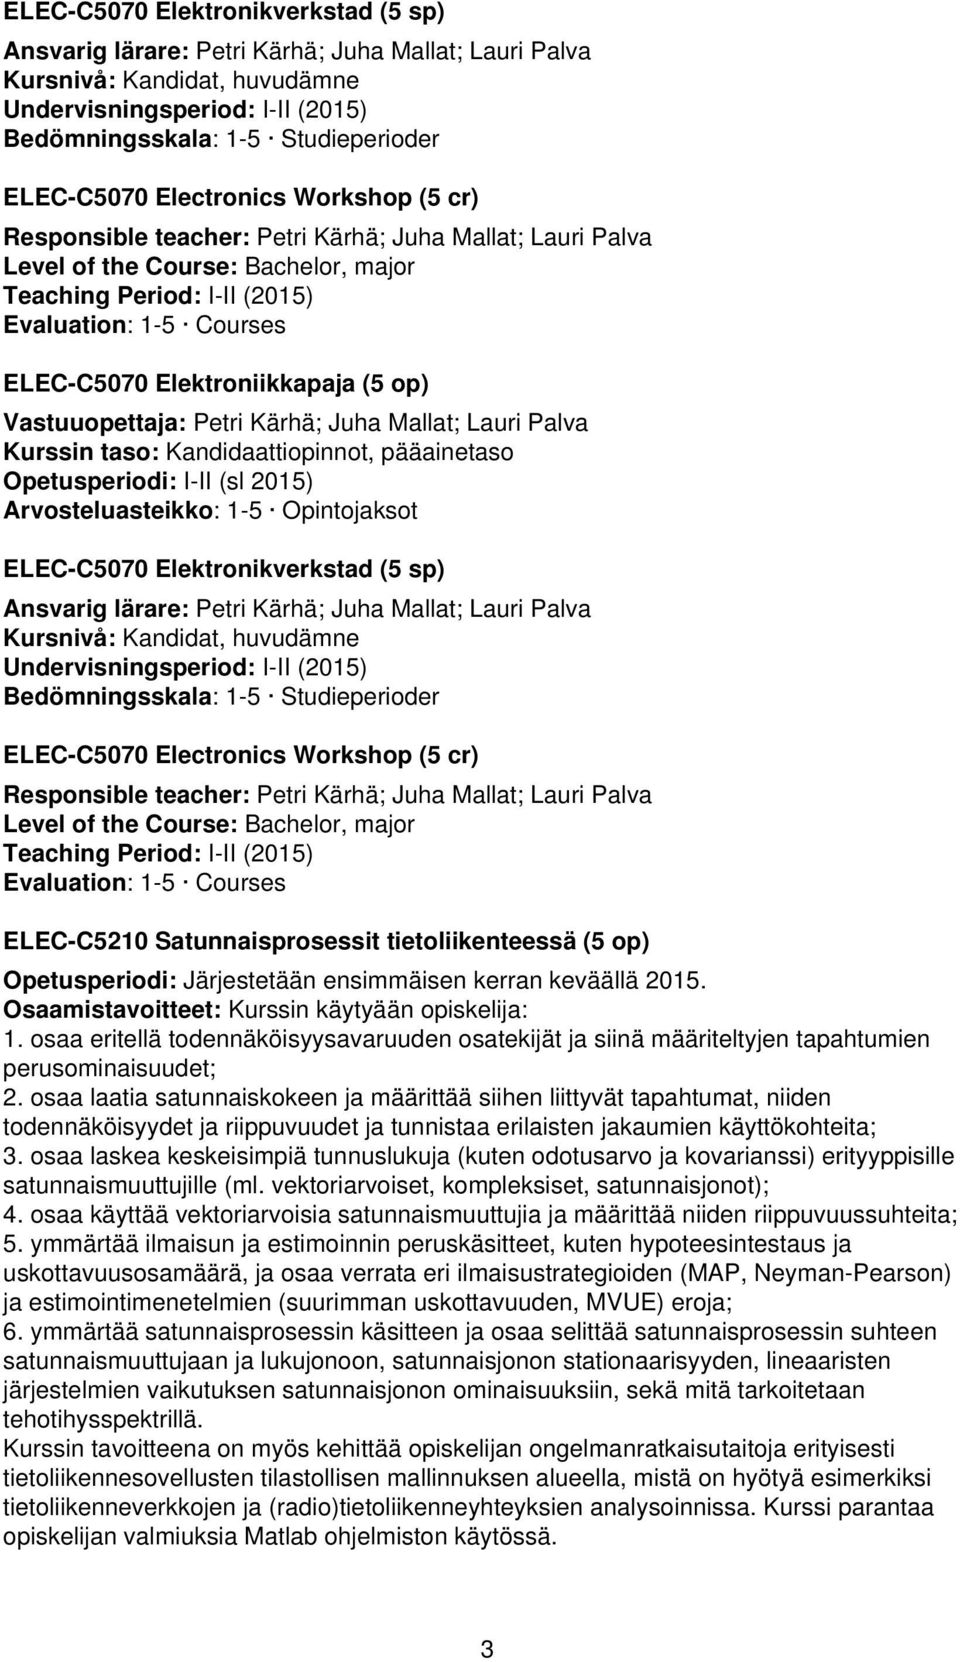 Elektroniikkapaja (5 op) Vastuuopettaja: Petri Kärhä; Juha Mallat; Lauri Palva Kurssin taso: Kandidaattiopinnot, pääainetaso Opetusperiodi: I-II (sl 2015) Arvosteluasteikko: 1-5 Opintojaksot 